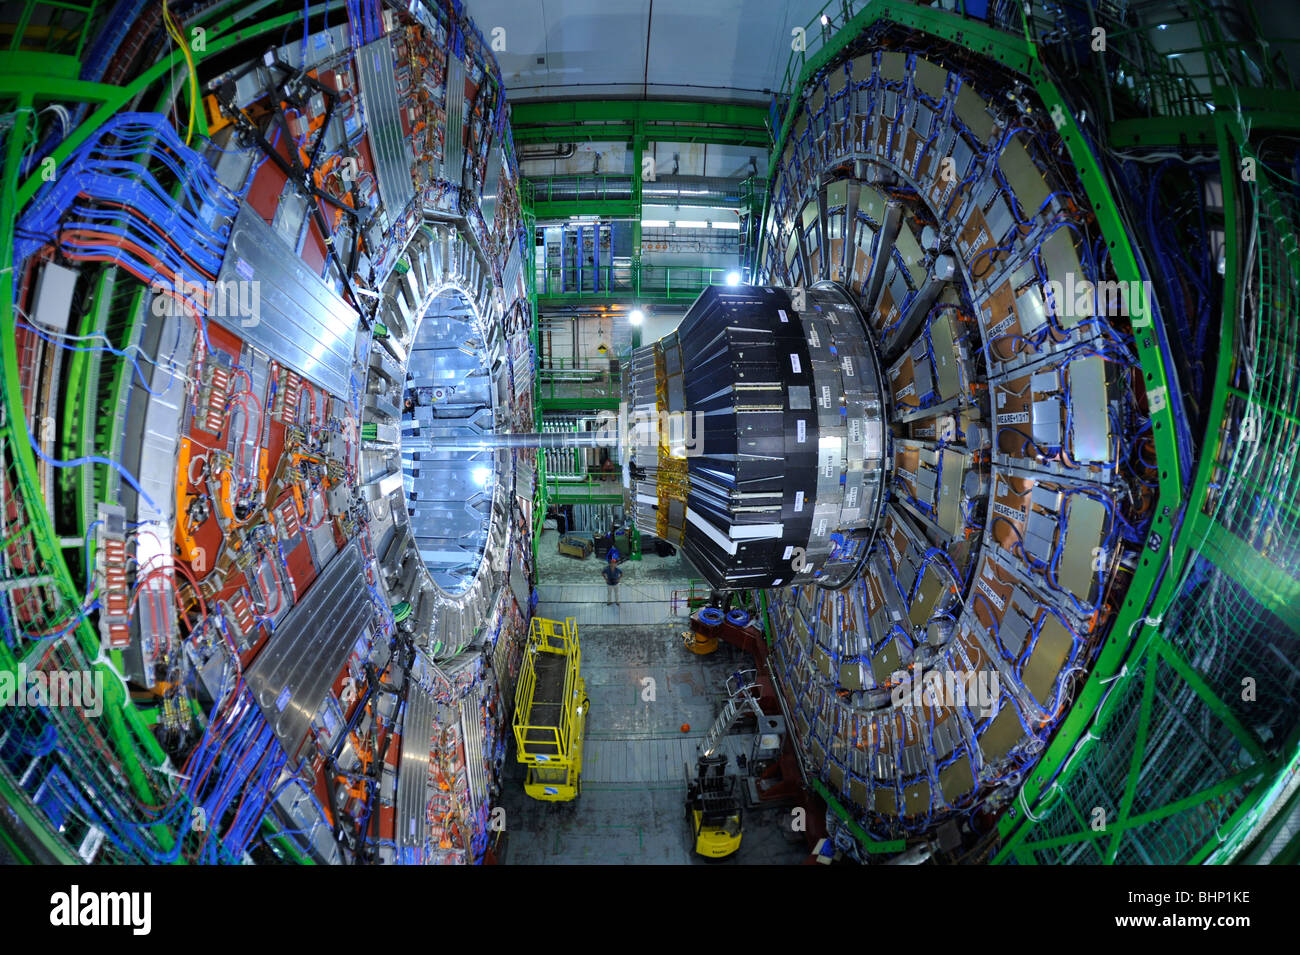 Schweiz, Genf, Innere des Cern, Labor für Kernforschung, Alice CSM- experiment Stockfotografie - Alamy